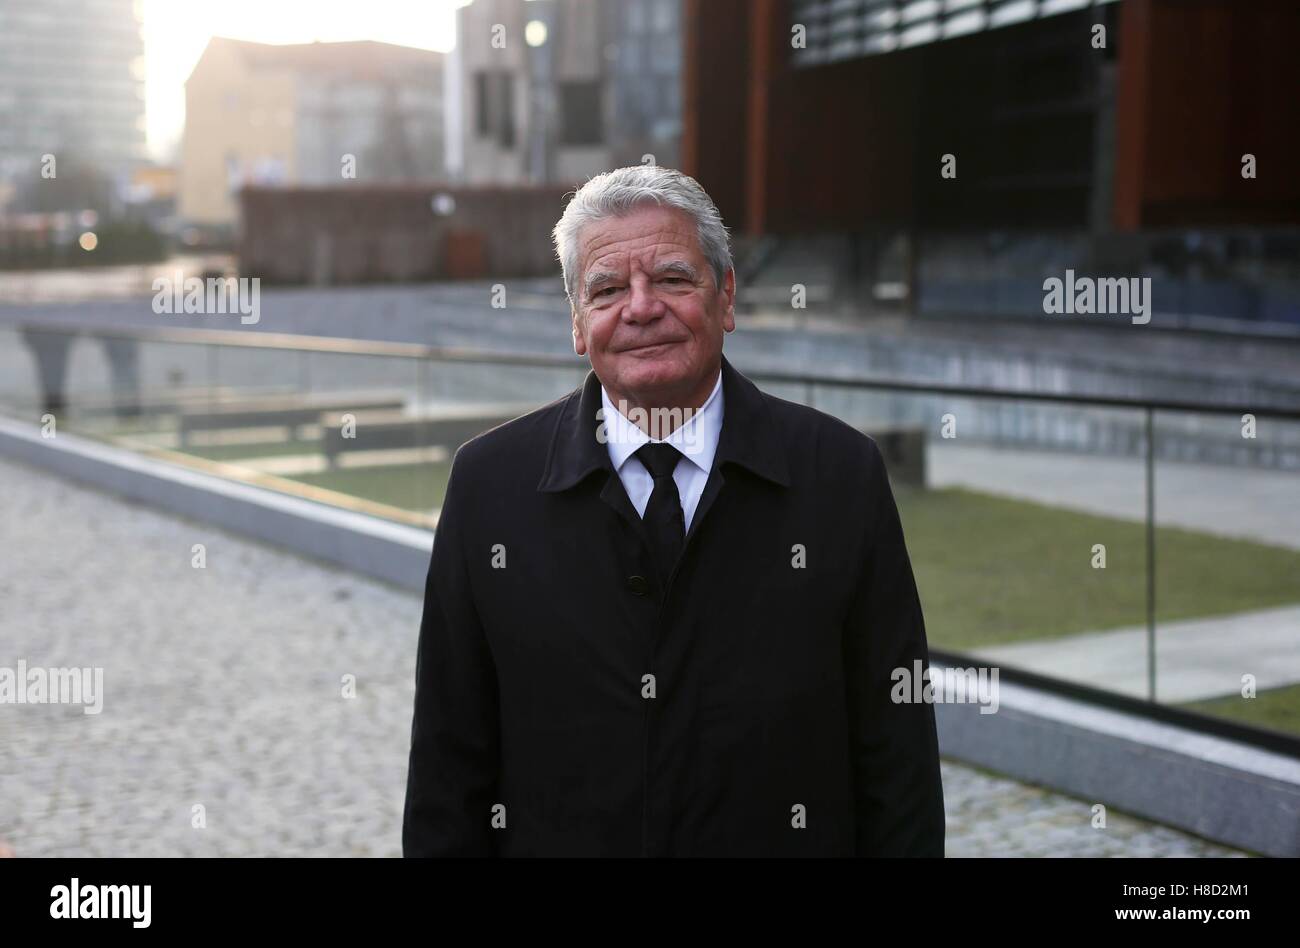 Piotr Hukalo / East News Gdansk 10 11 2016. Prezydent Niemiec Joachim Gauck z wizyta w Gdansku. n/z Joachim Gauck  The President Stock Photo